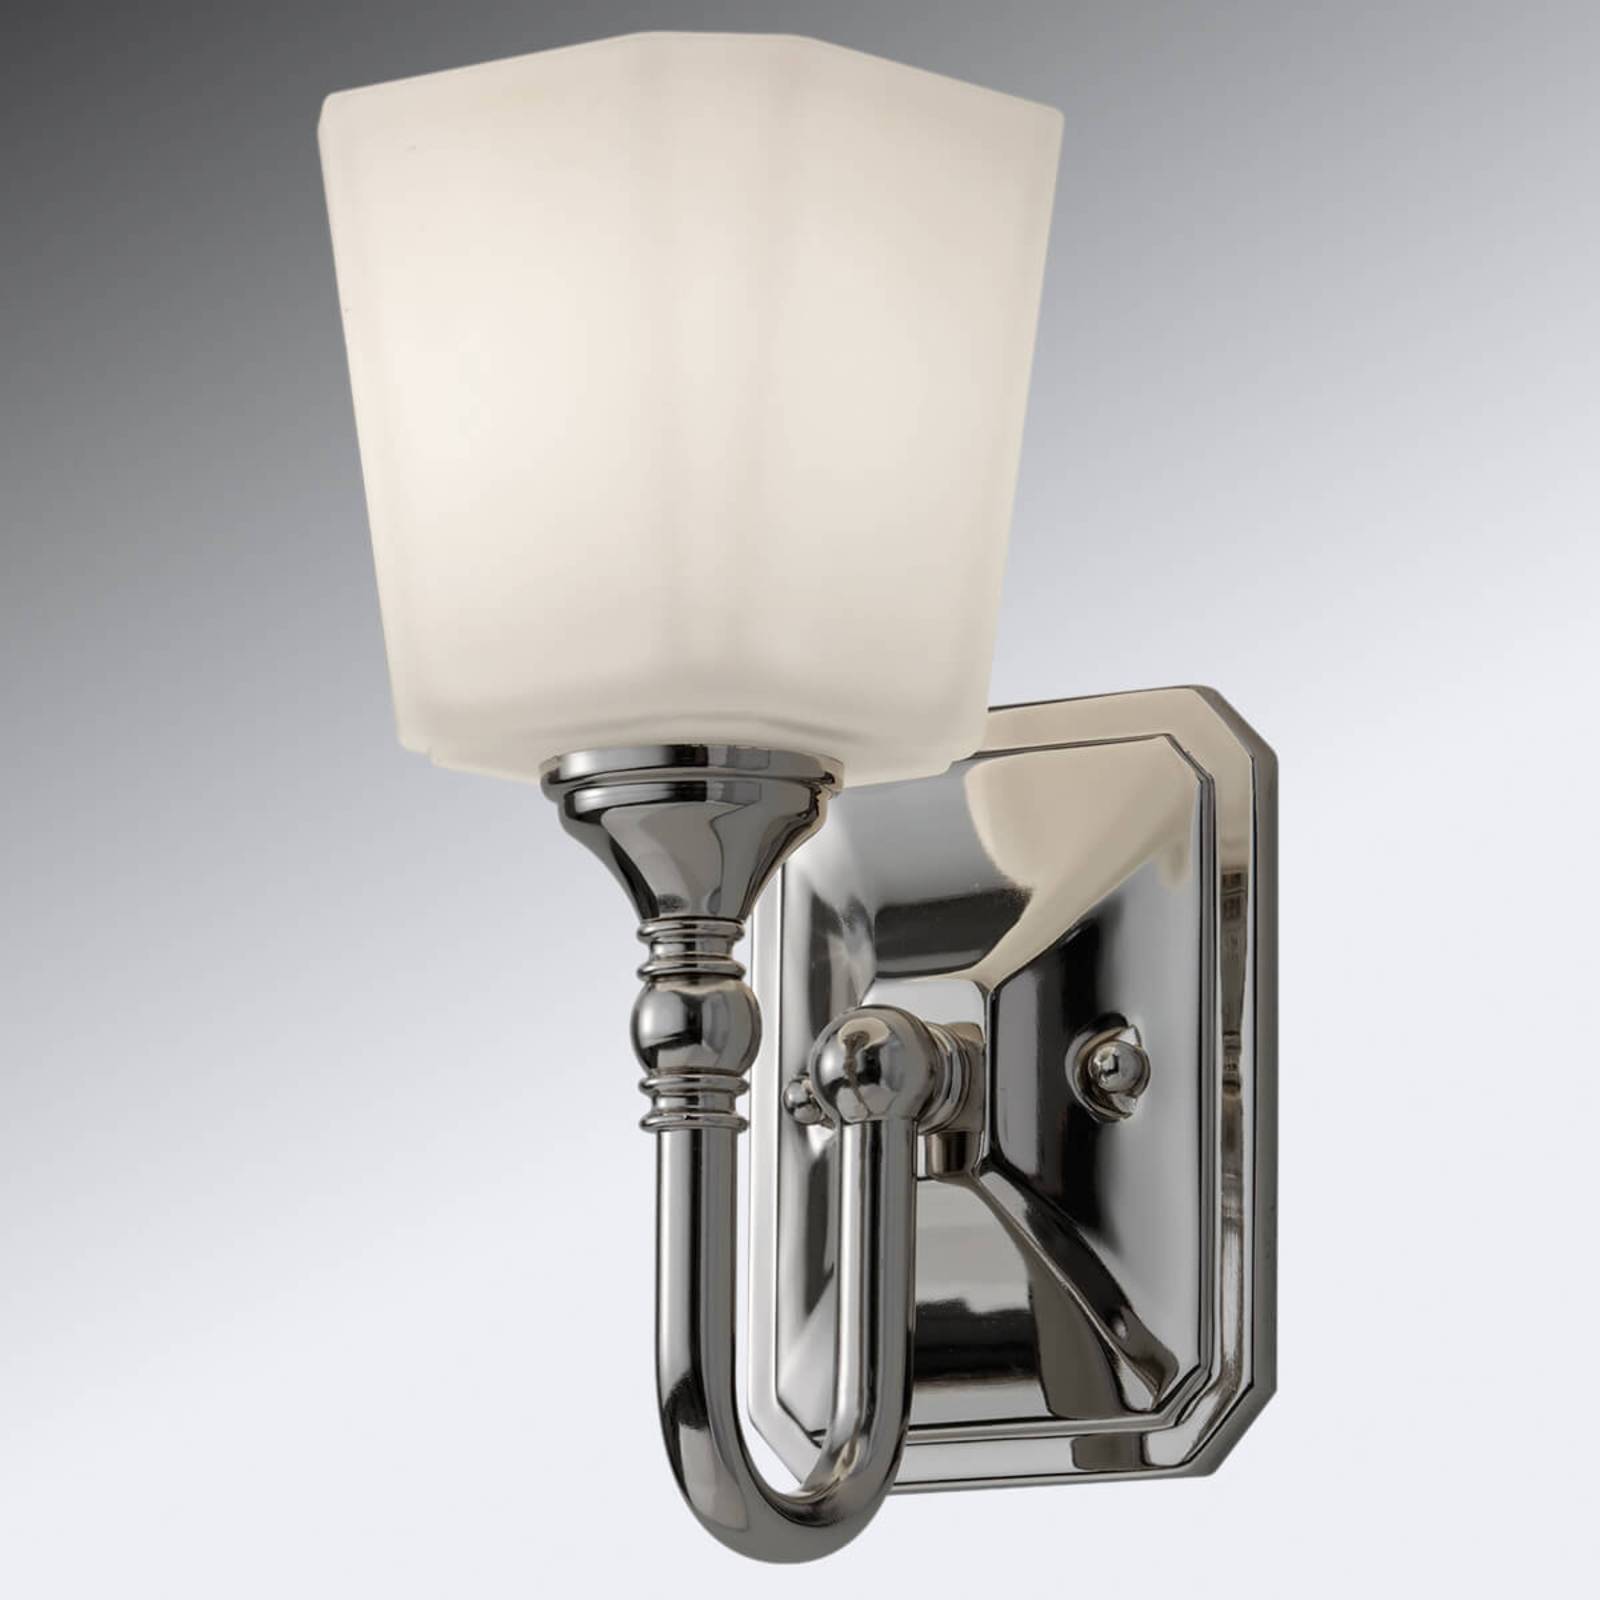 Vegglampe Concord i klassisk design til badet